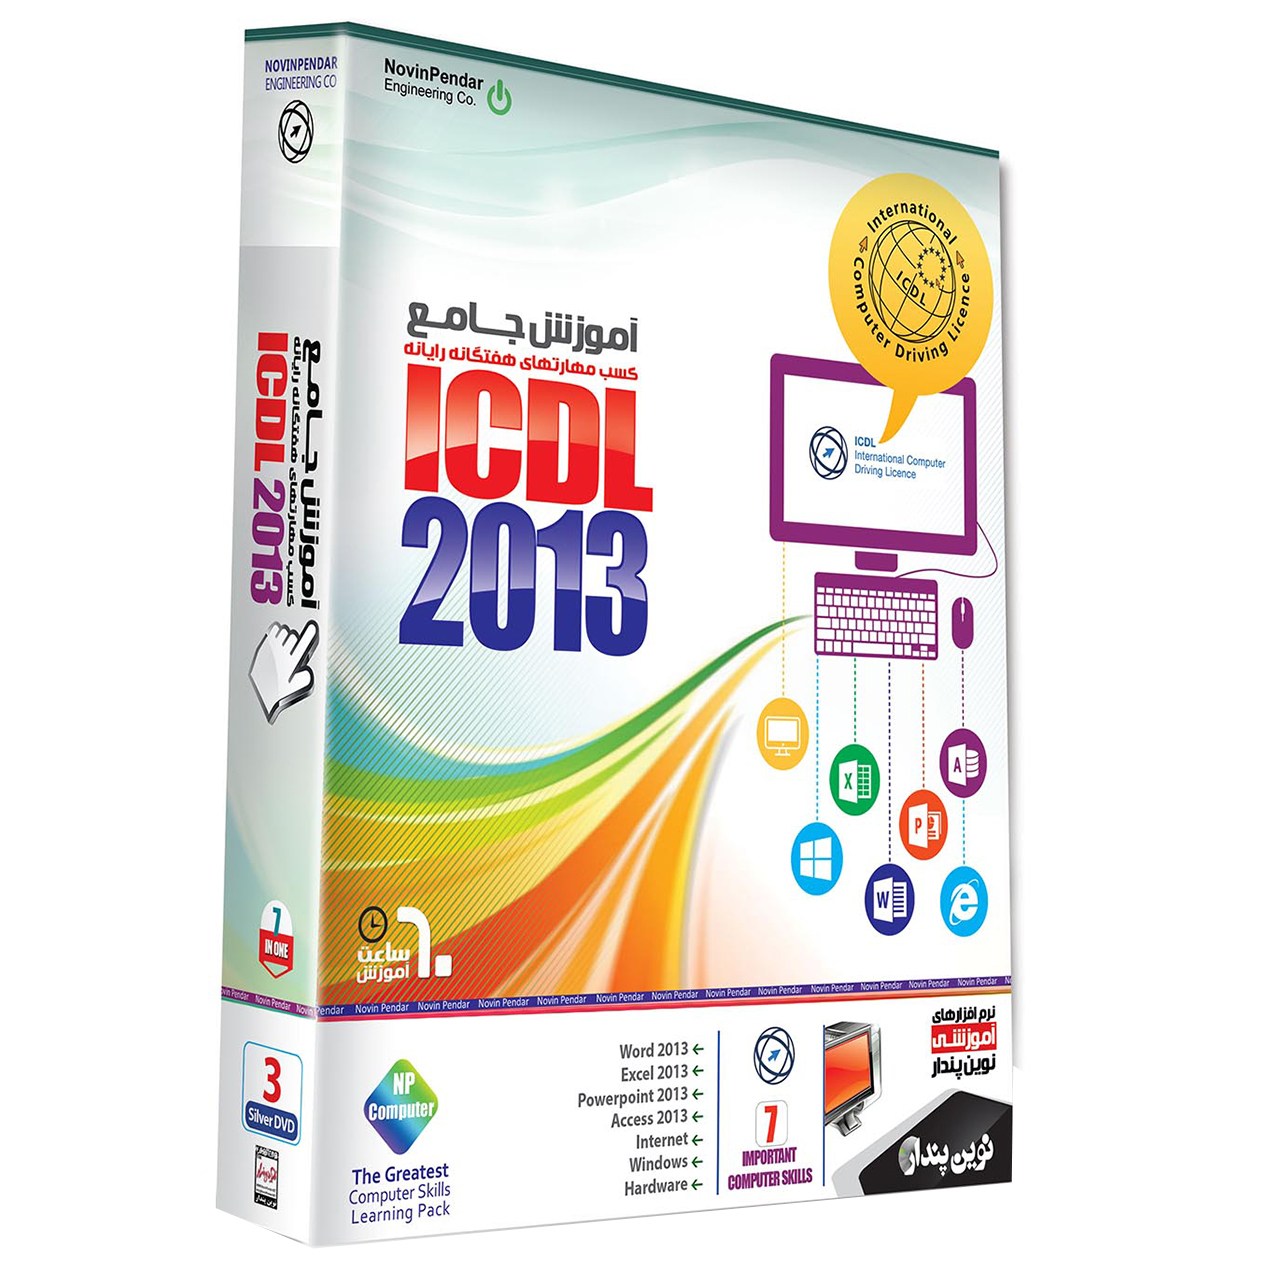 نرم افزار آموزش جامع ICDL 2013 نشر نوین پندار